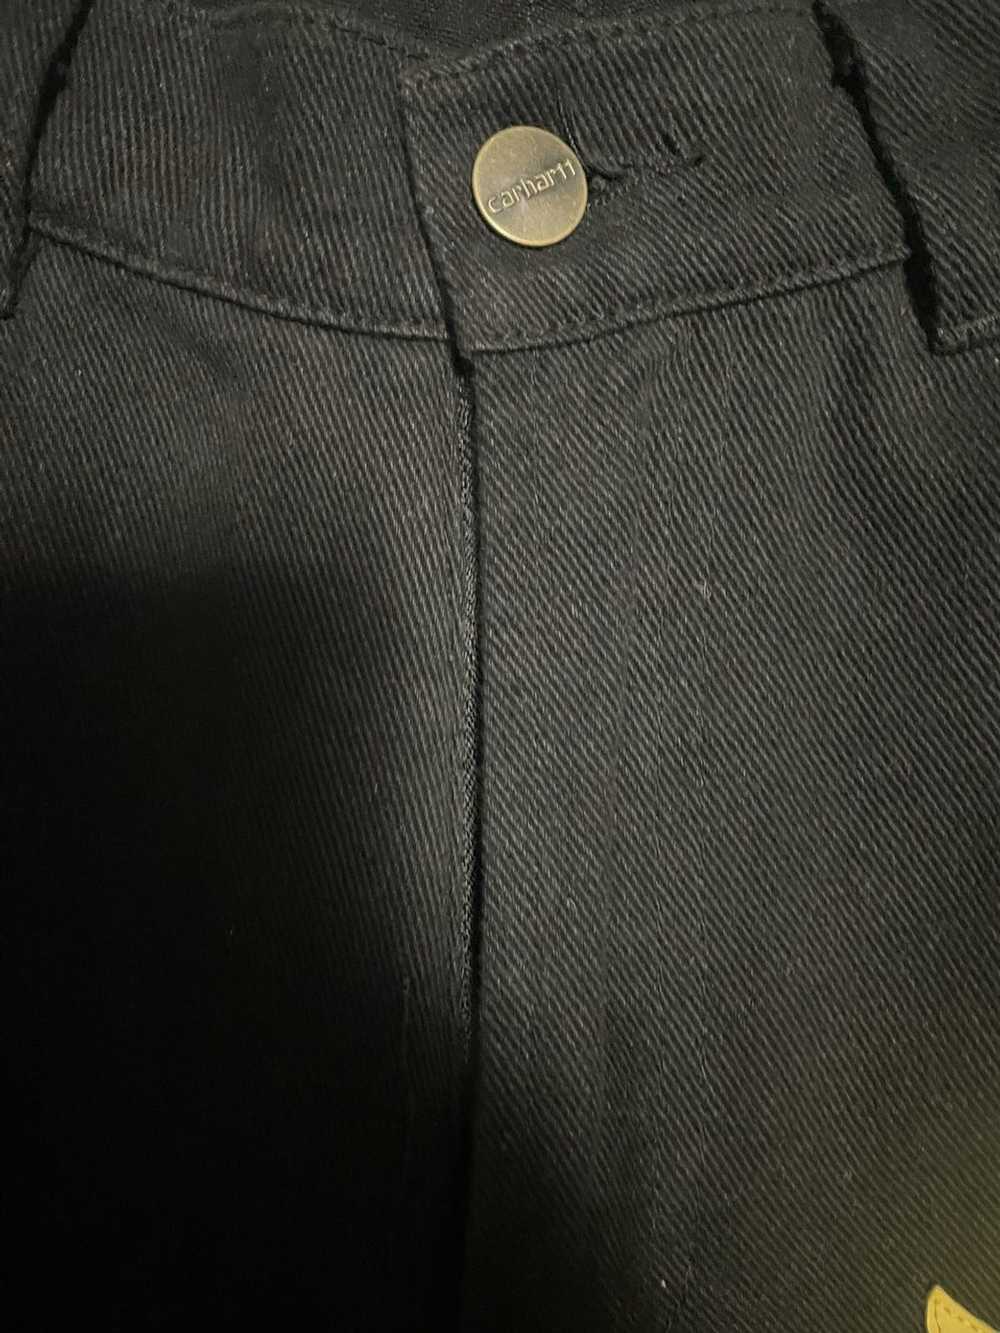 Custom × Vintage Custom black flared cross pants - image 2